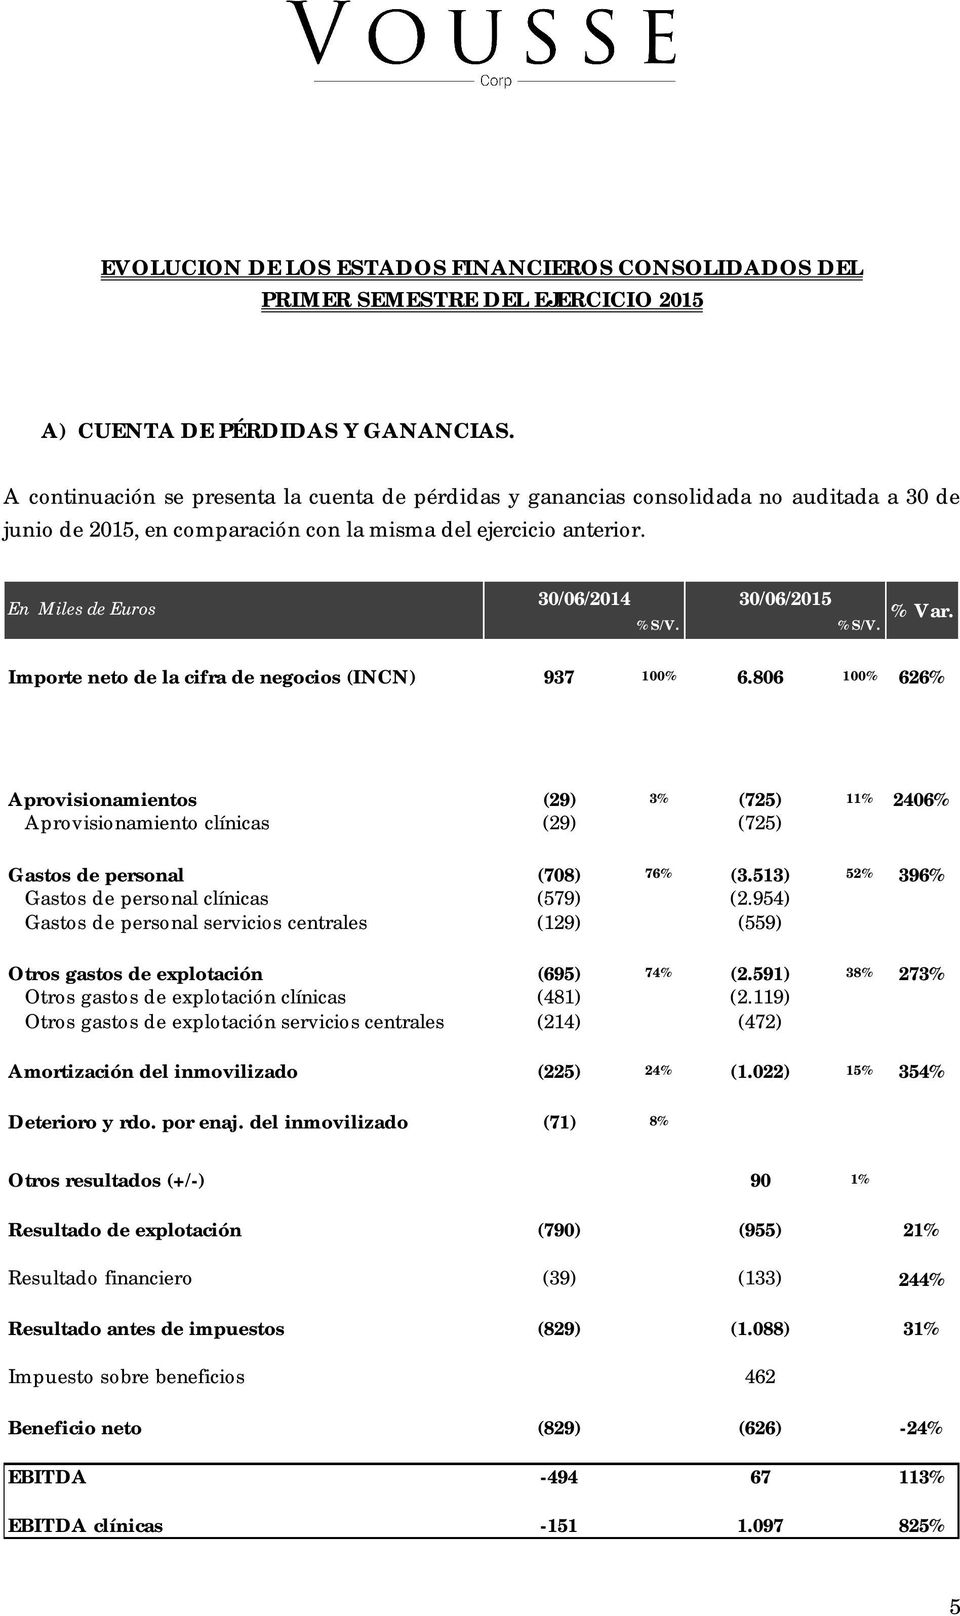 En Miles de Euros 30/06/2014 30/06/2015 %S/V. %S/V. % Var. Importe neto de la cifra de negocios (INCN) 937 100% 6.